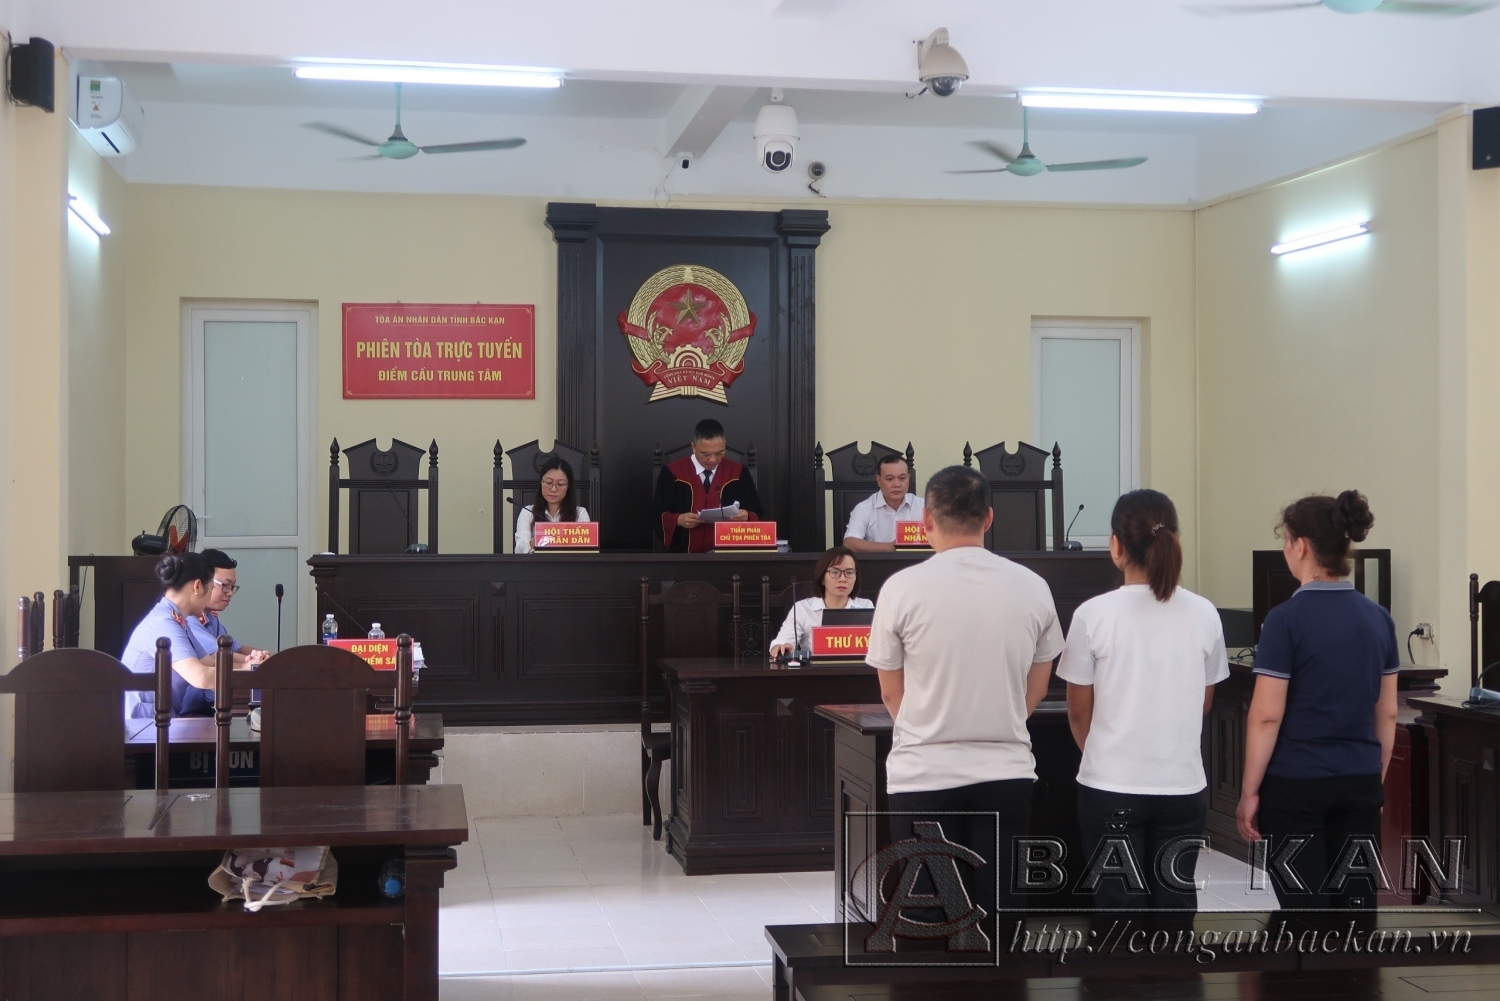  Tòa án nhân dân tỉnh Bắc Kạn xét xử vụ án hình sự về tội “Cho vay lãi nặng trong giao dịch dân sự” xảy ra tại huyện Chợ Đồn